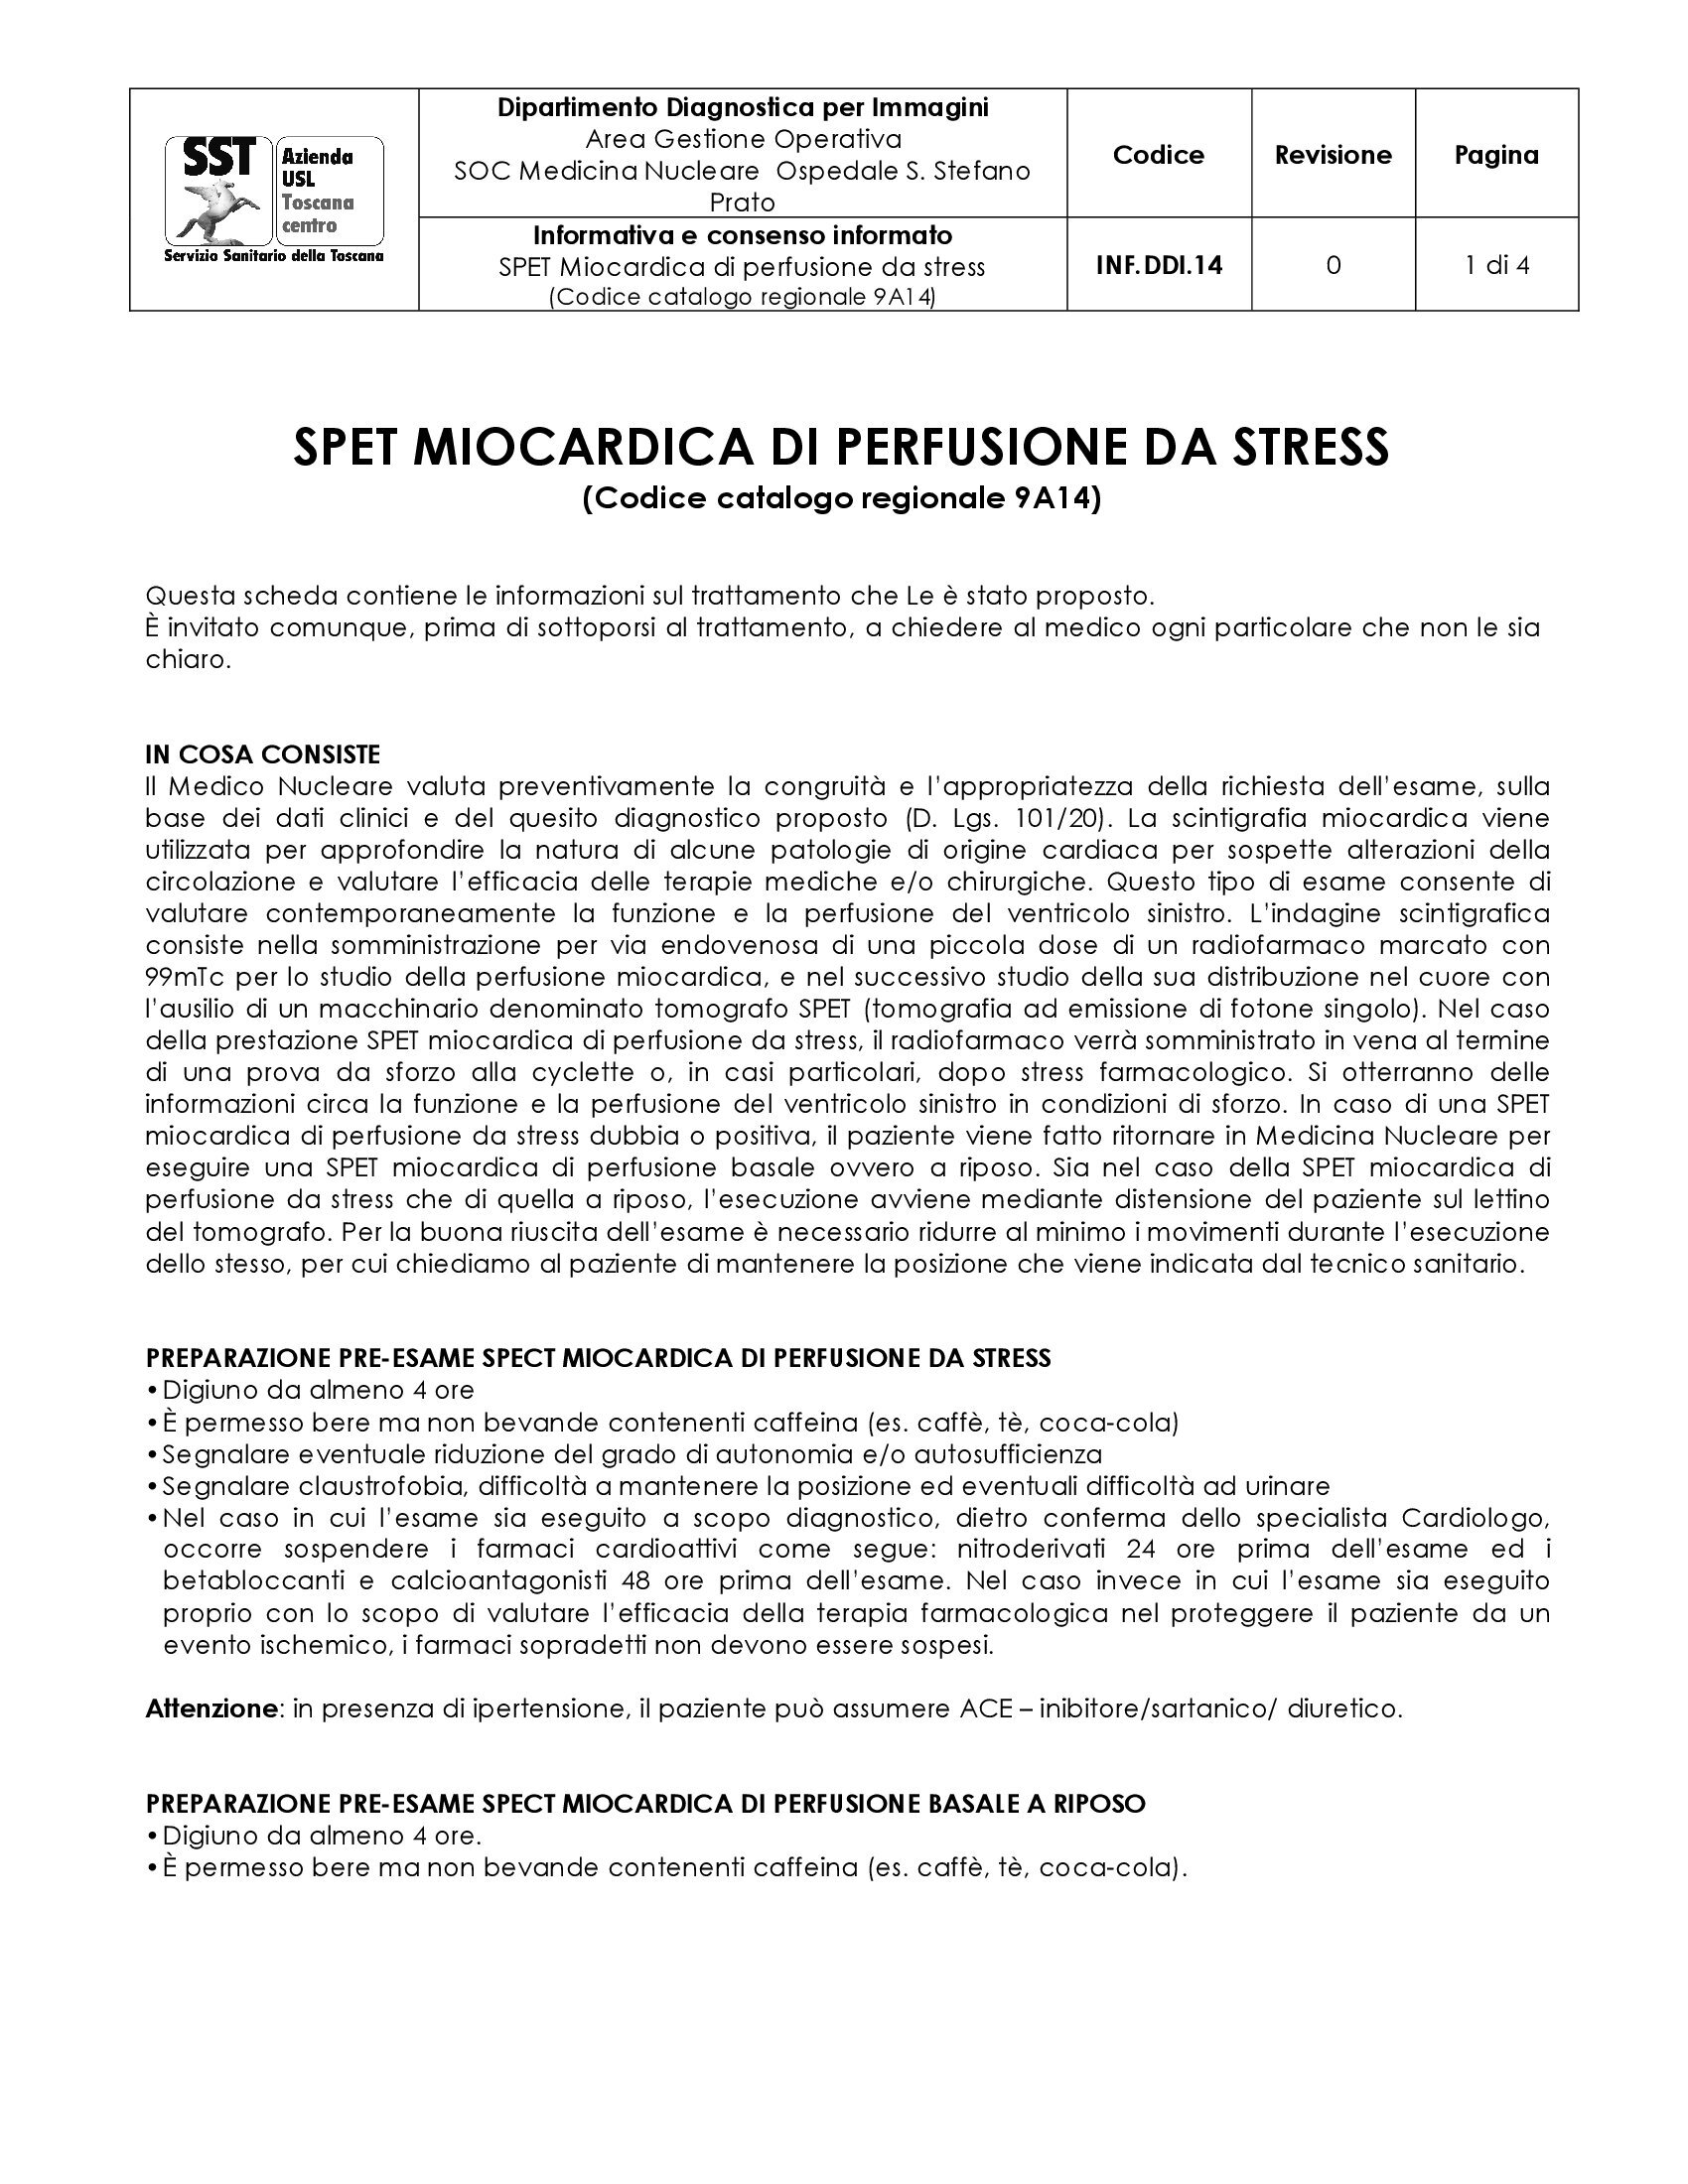 INF.DDI.14 SPET Miocardica di perfusione da stress  (Codice catalogo regionale 9A14)